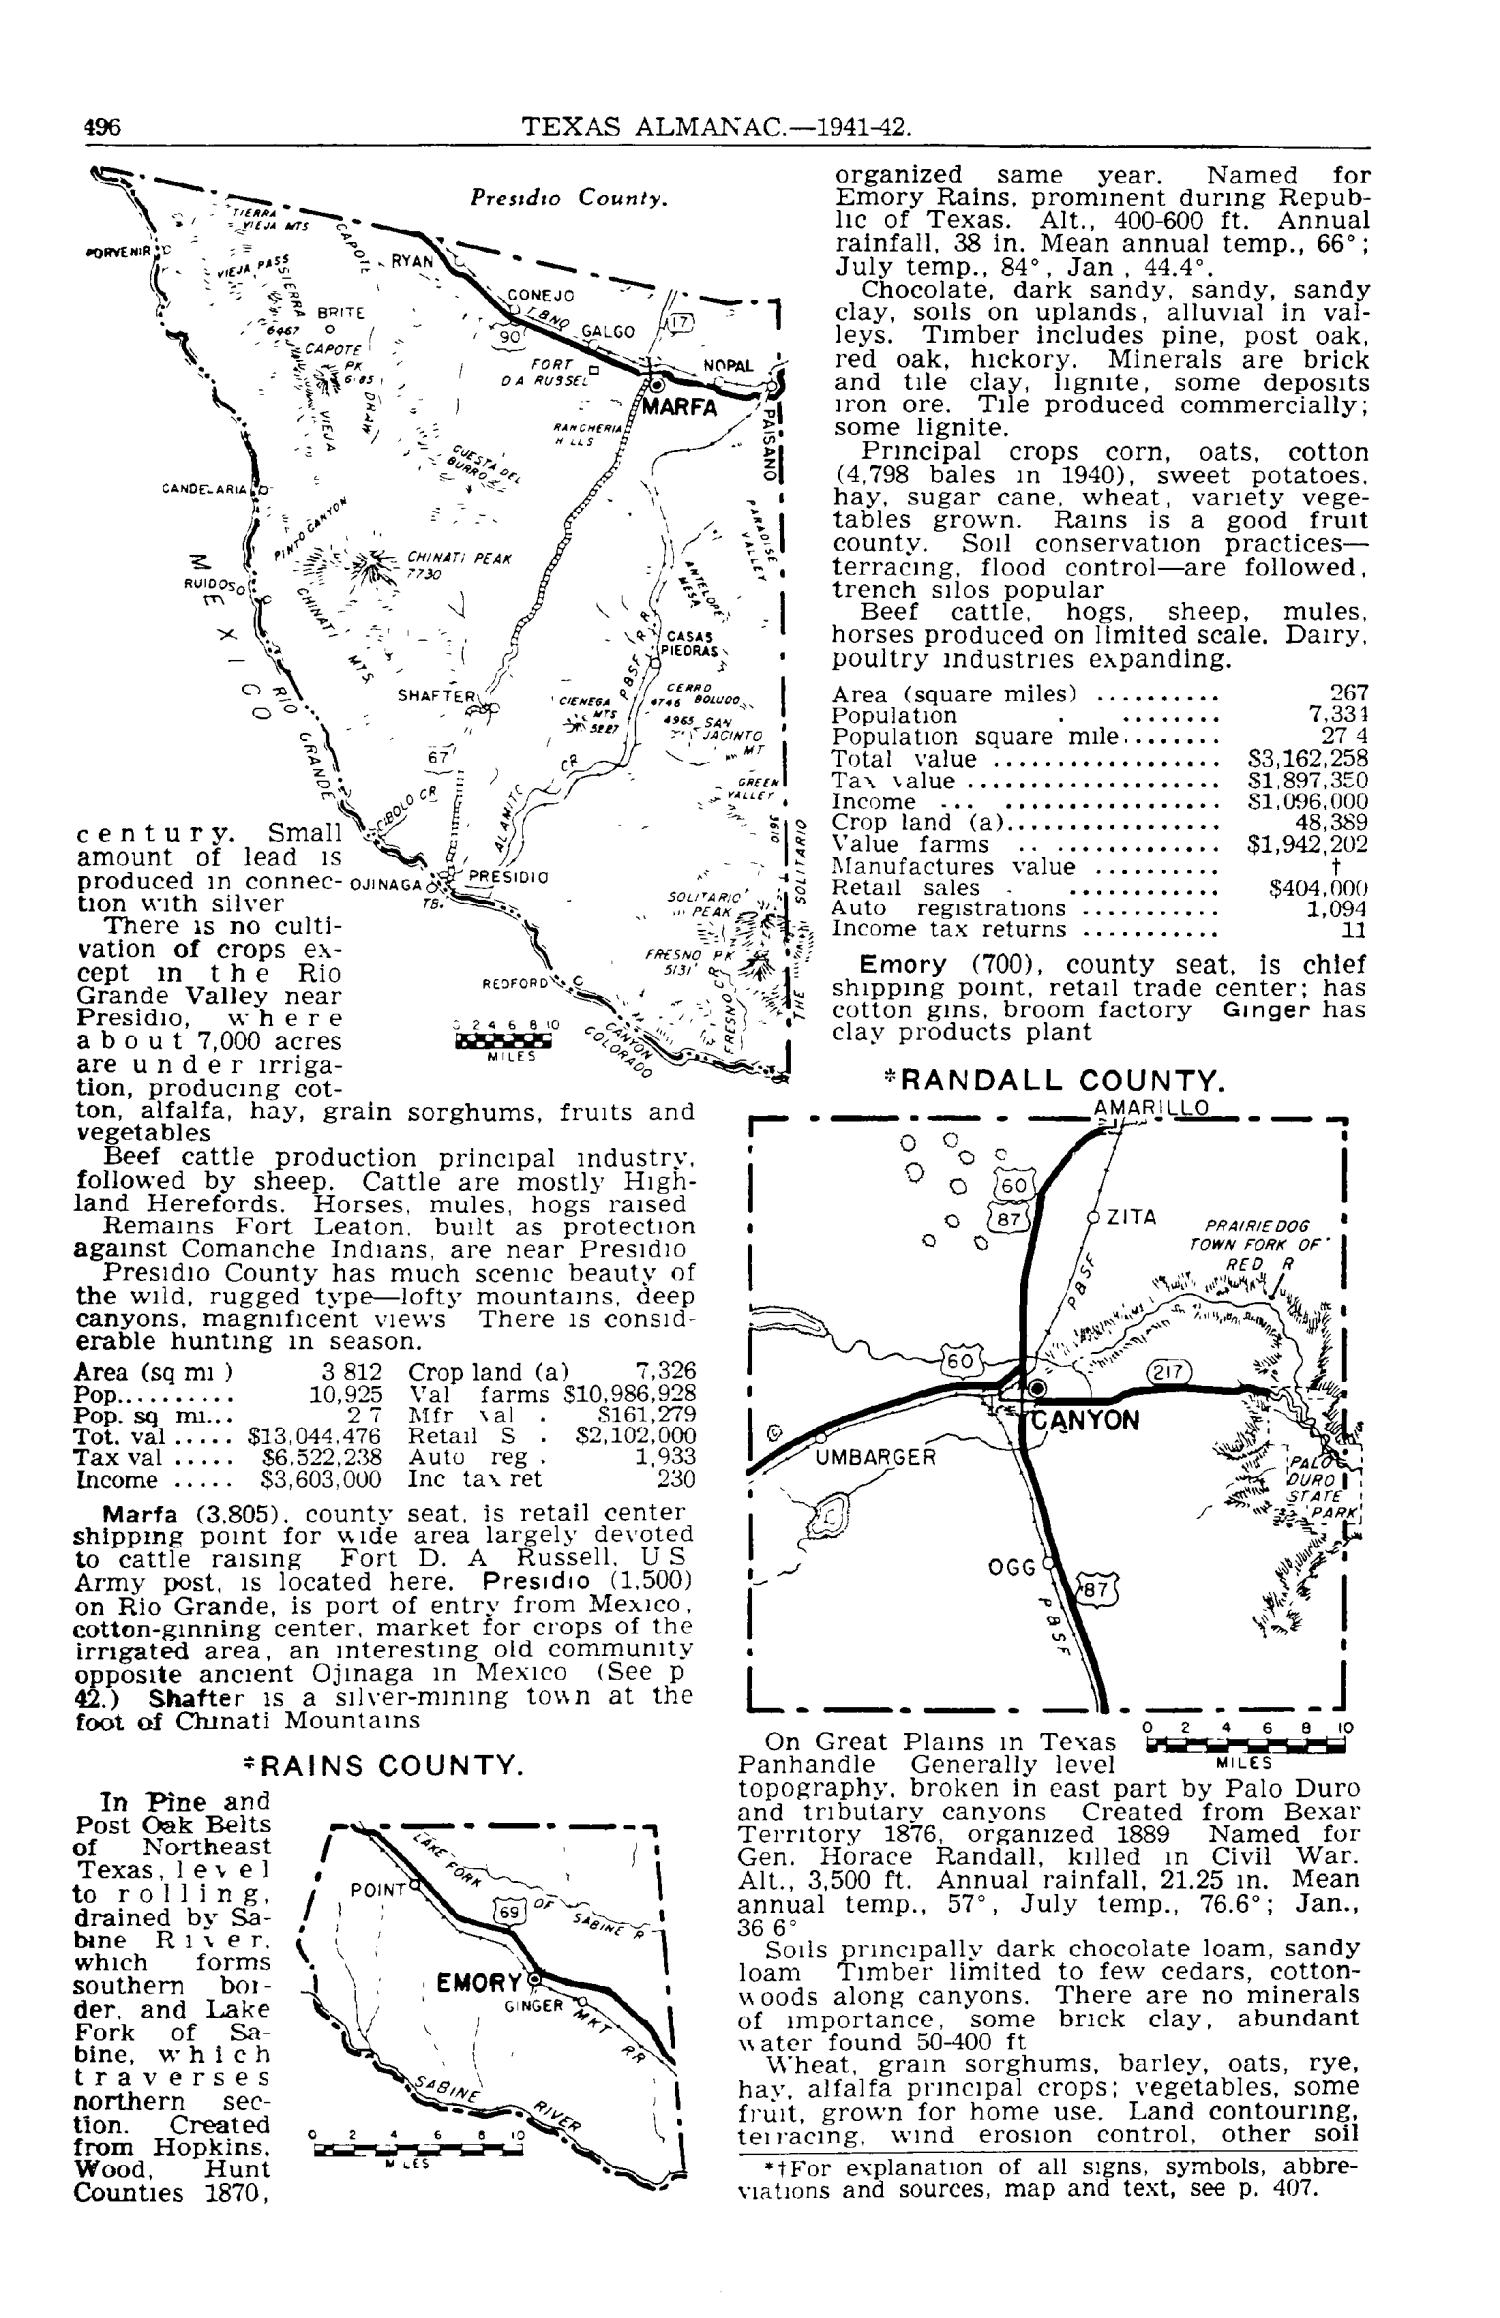 Texas Almanac, 1941-1942
                                                
                                                    496
                                                